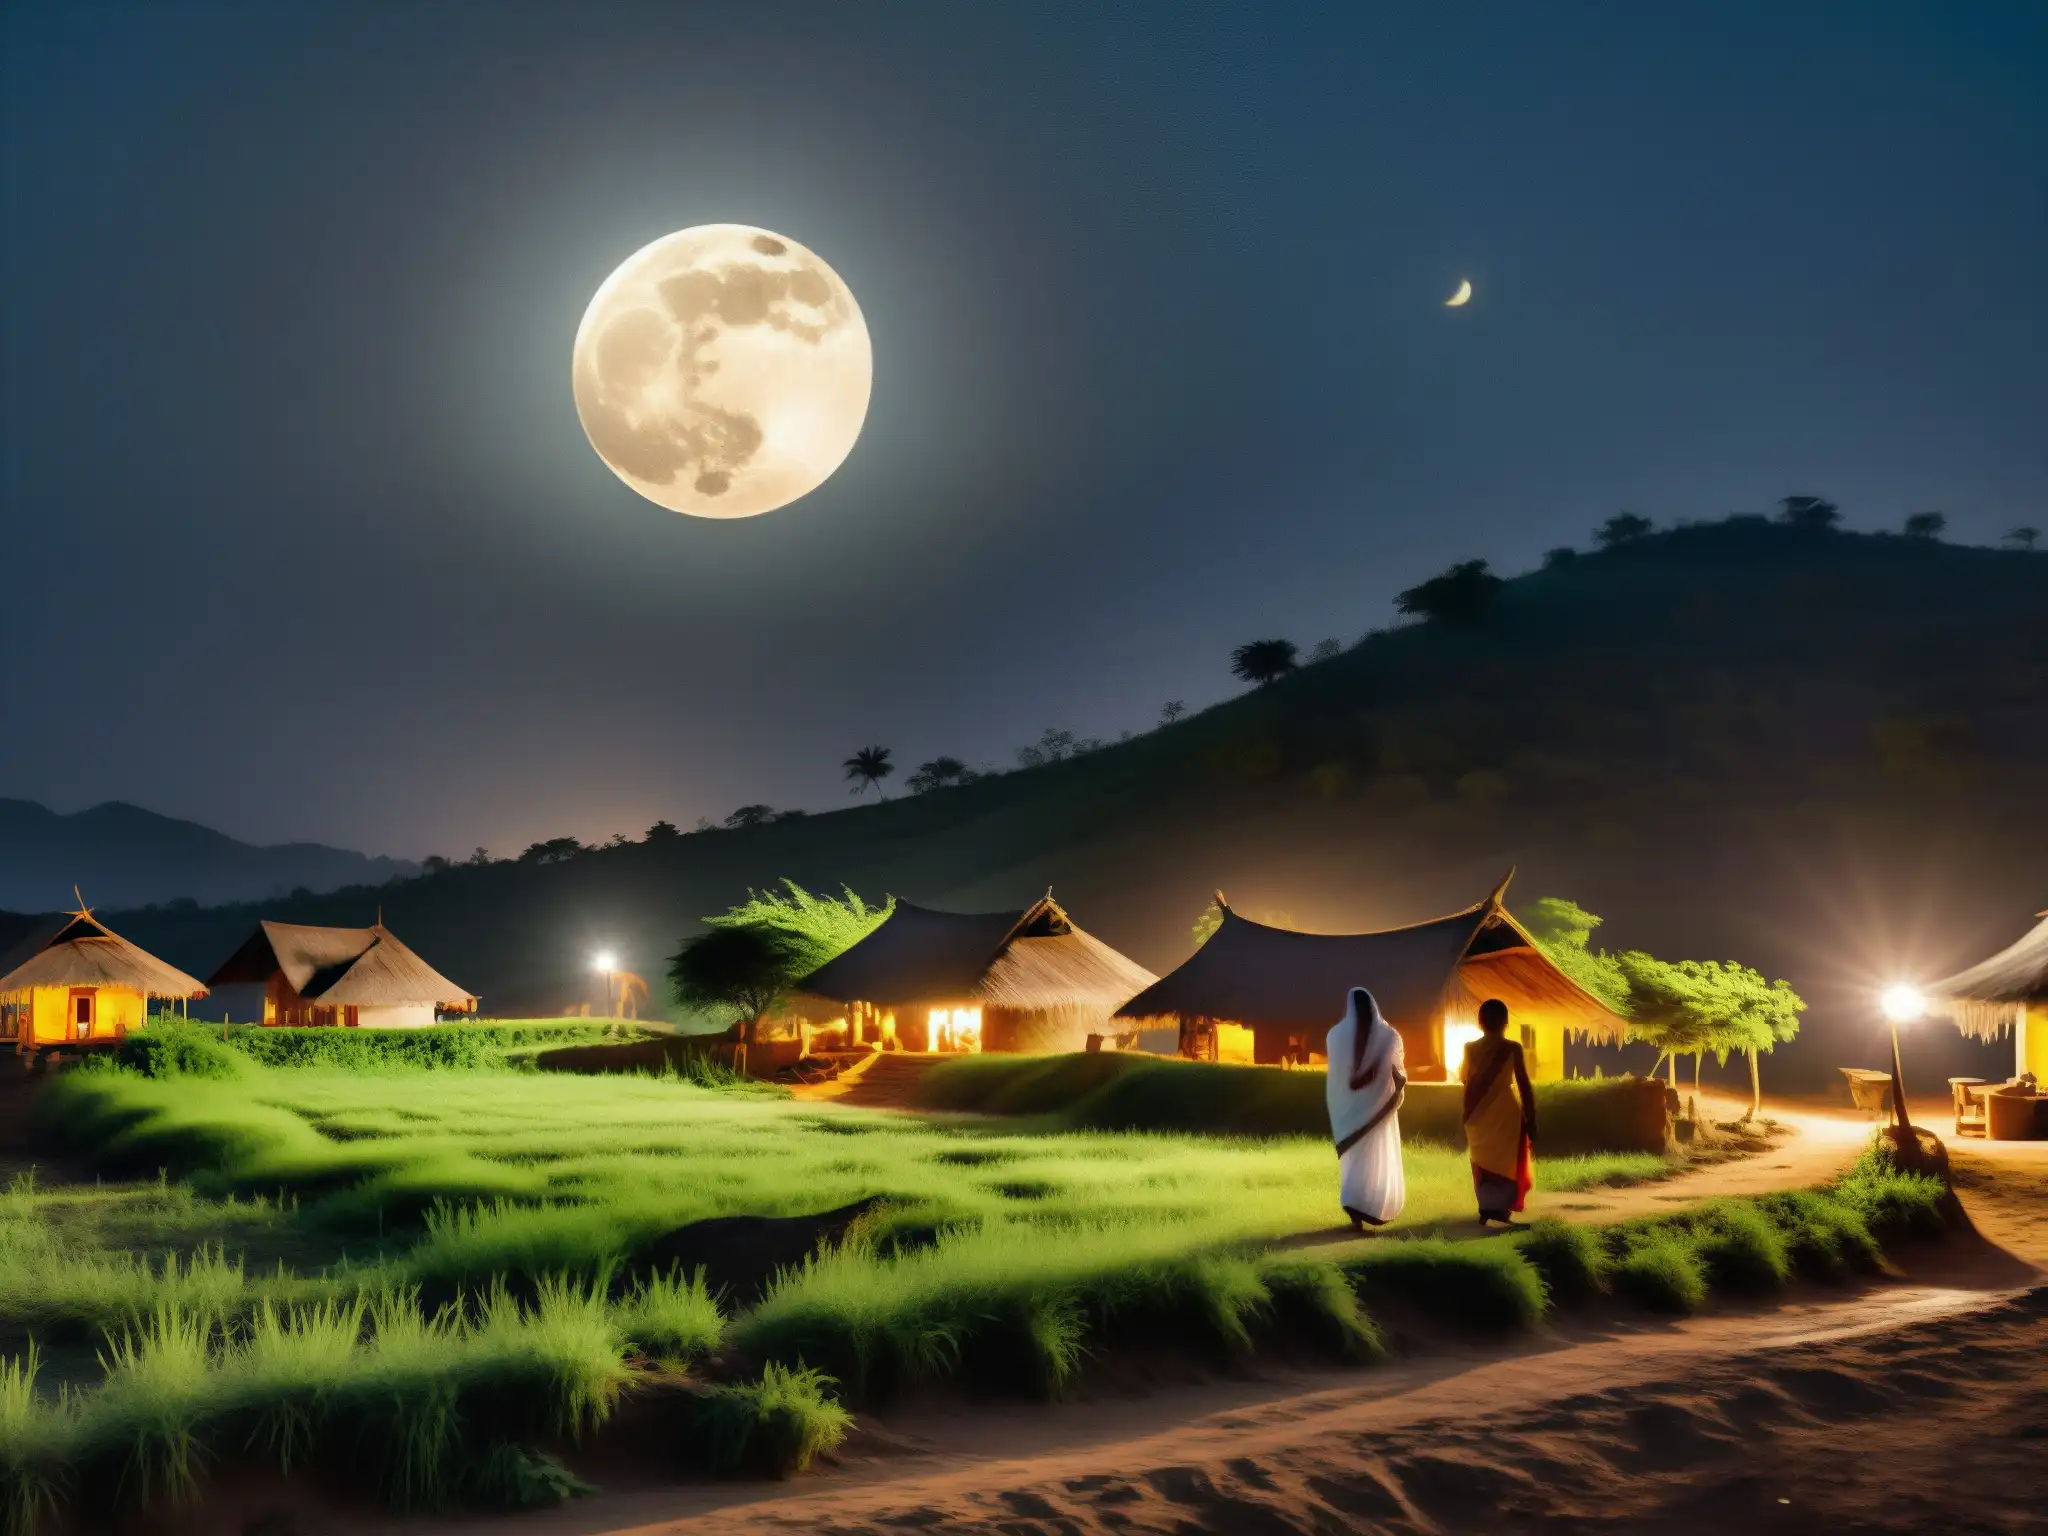 En una aldea rural india, la atmósfera misteriosa se apodera de la noche iluminada por la luna llena